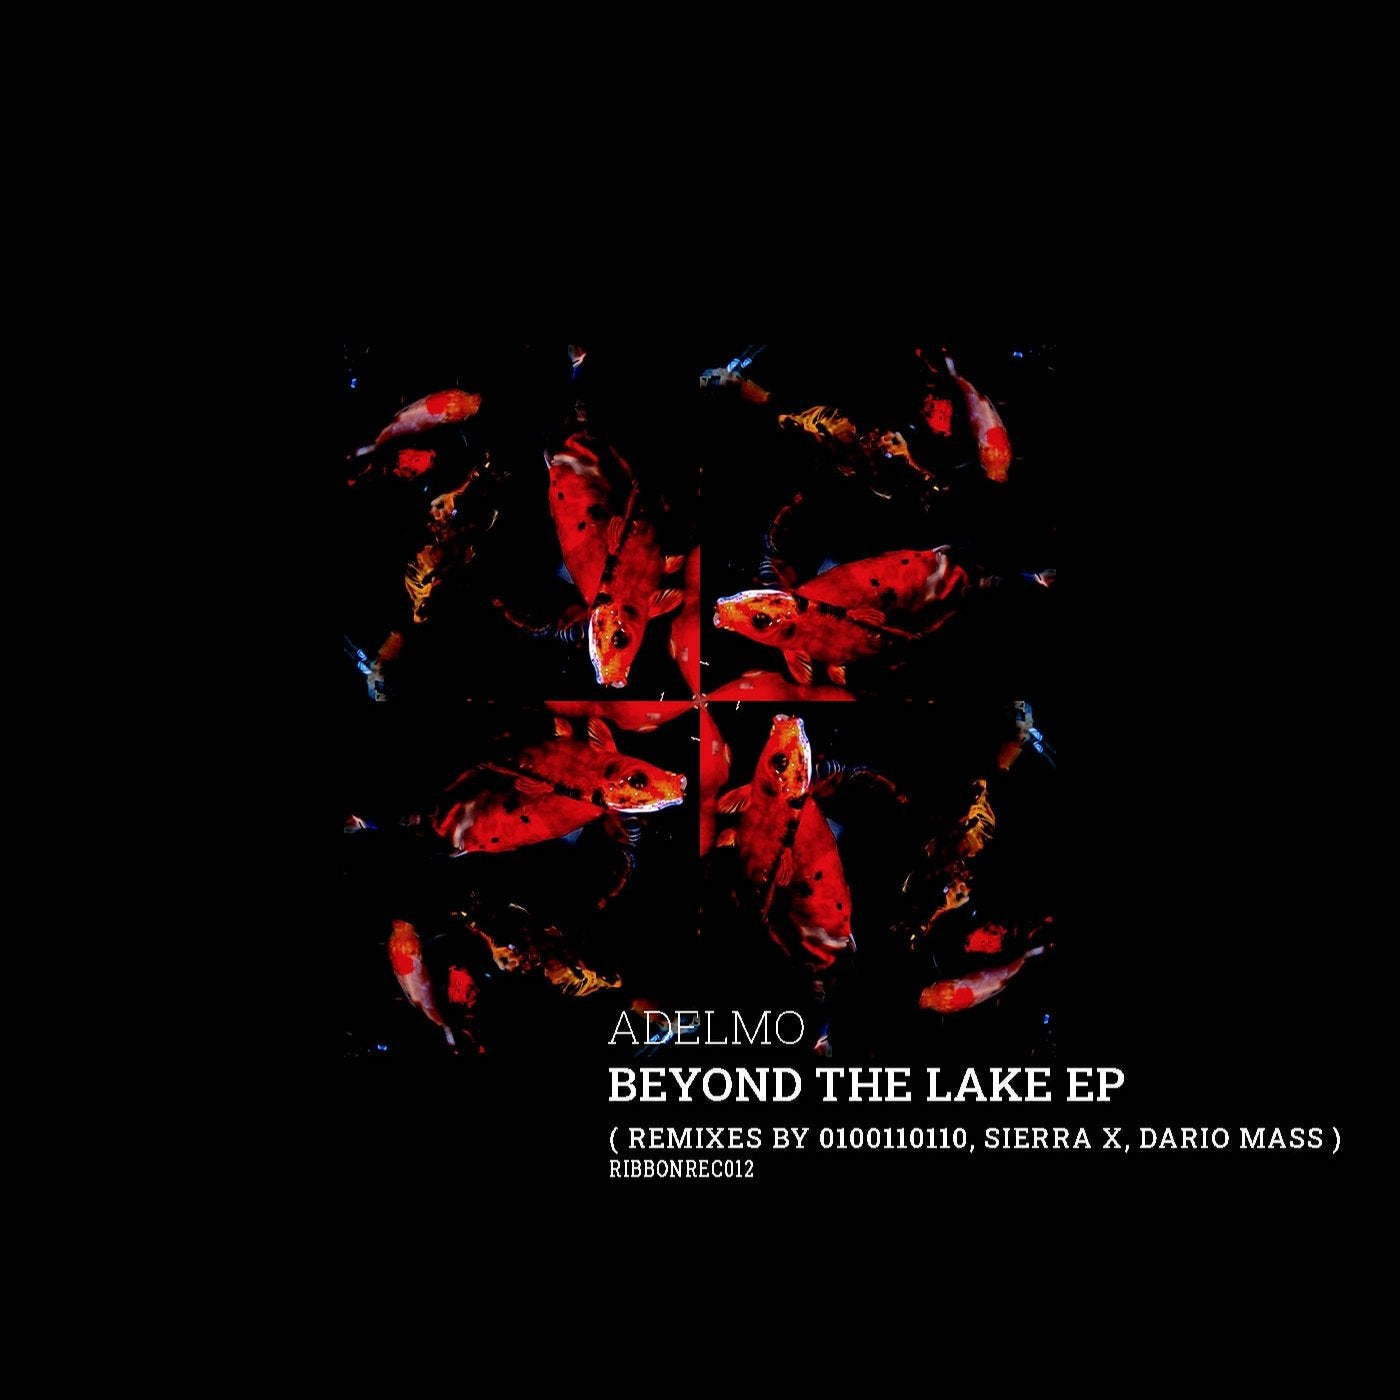 Beyond the lake EP